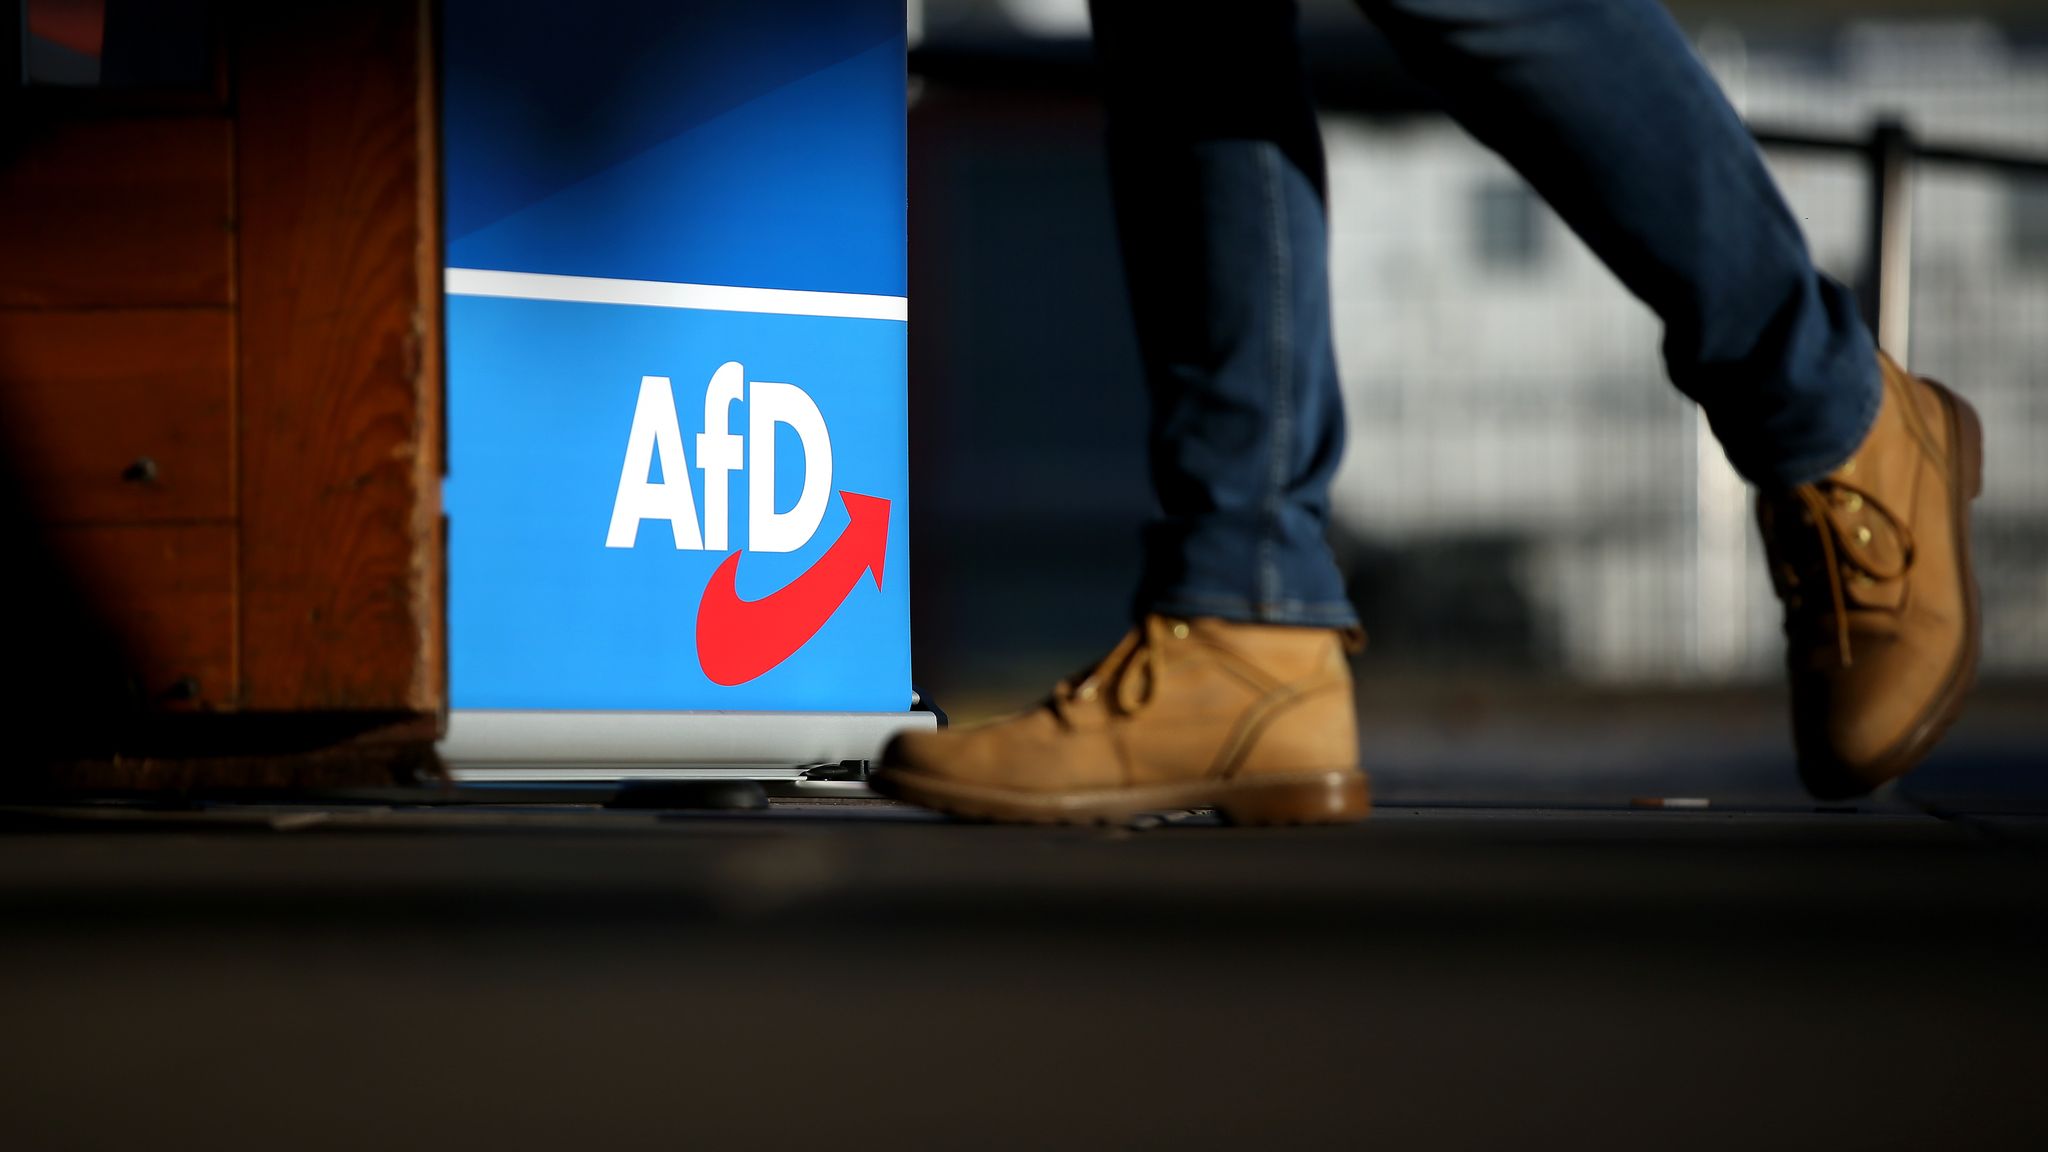 Anti AfD Alternative für Dummheit Politik Meinung' Mousepad